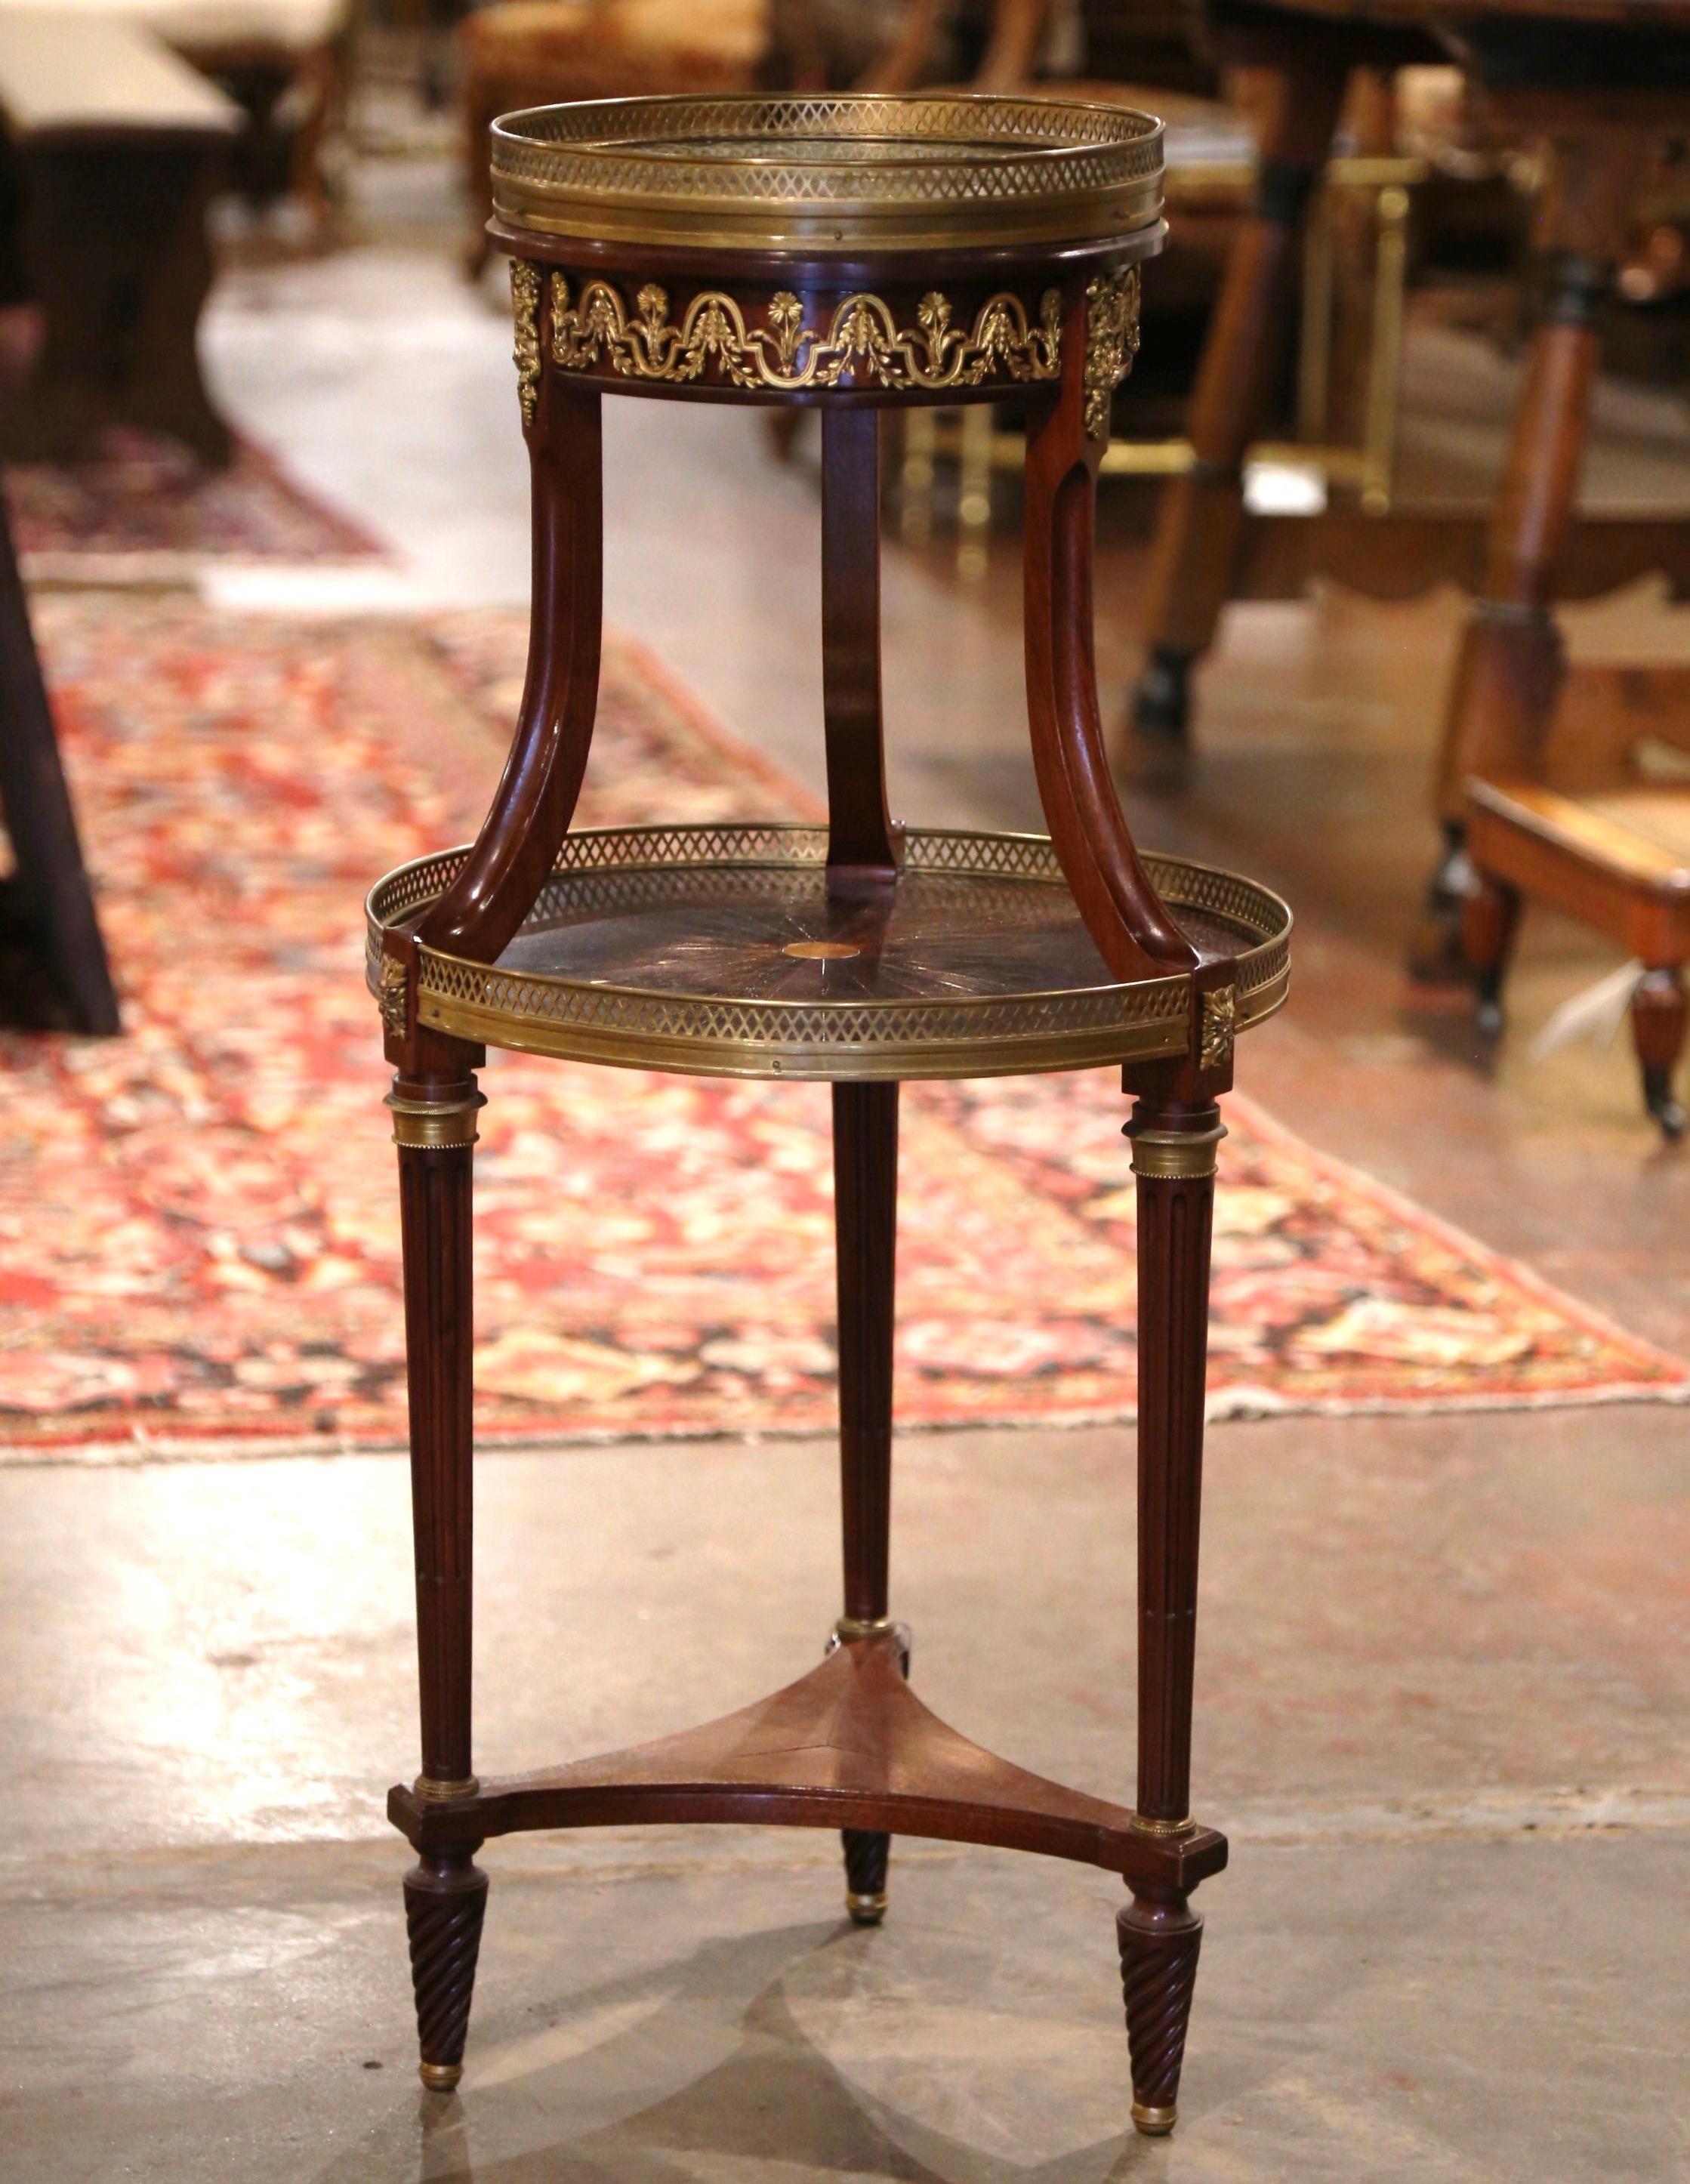 Dieser zierliche und hohe antike Tisch mit zwei Etagen wurde um 1880 in Frankreich hergestellt. Der runde Bouillotte-Tisch steht auf drei spitz zulaufenden und kannelierten Beinen, die mit Messingringen verziert sind und mit gedrehten Füßen über